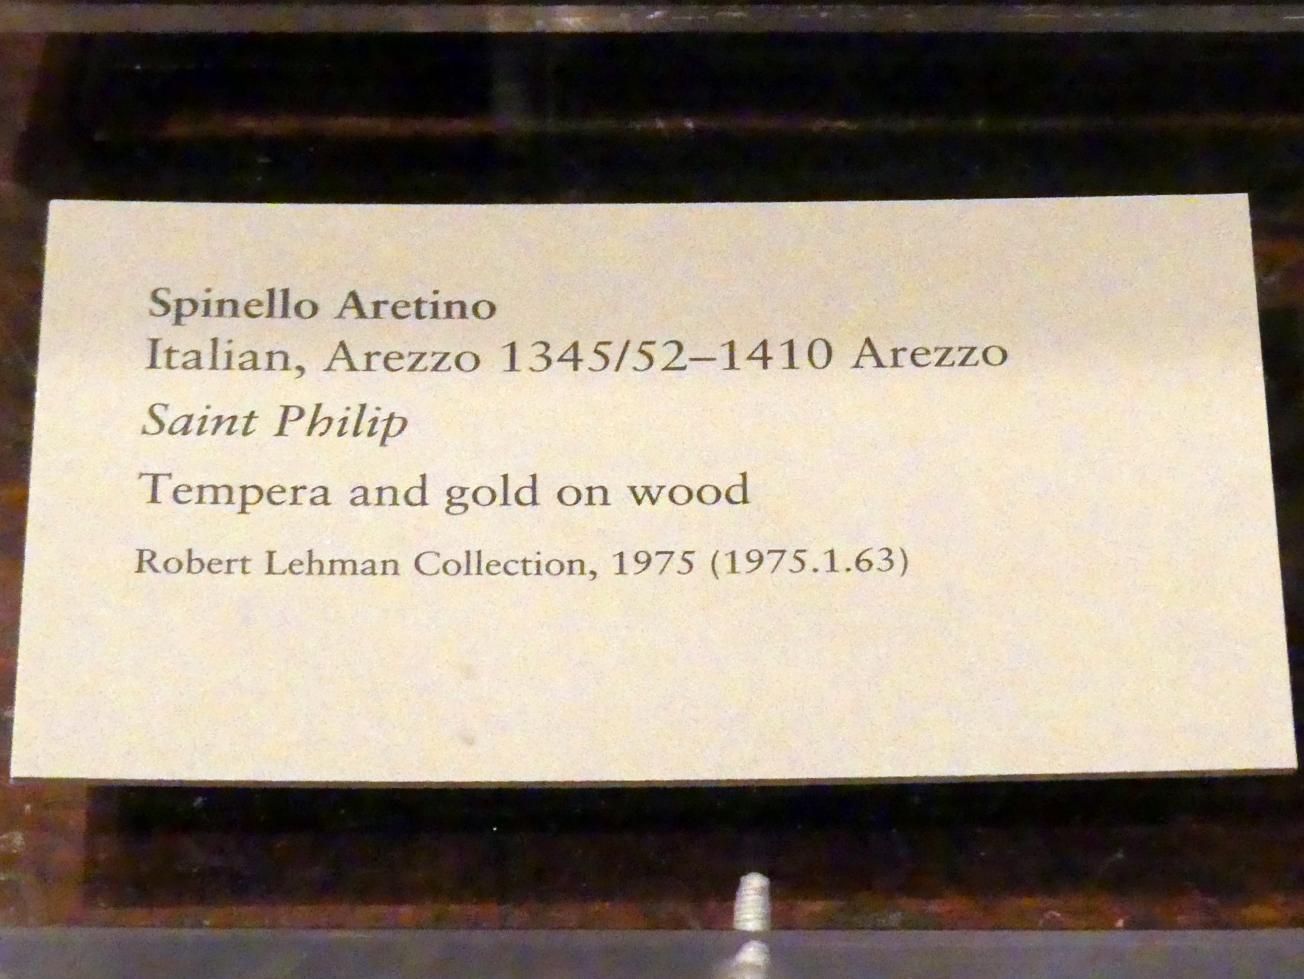 Spinello Aretino (1401), Heiliger Philippus, New York, Metropolitan Museum of Art (Met), Saal 954, Undatiert, Bild 2/2